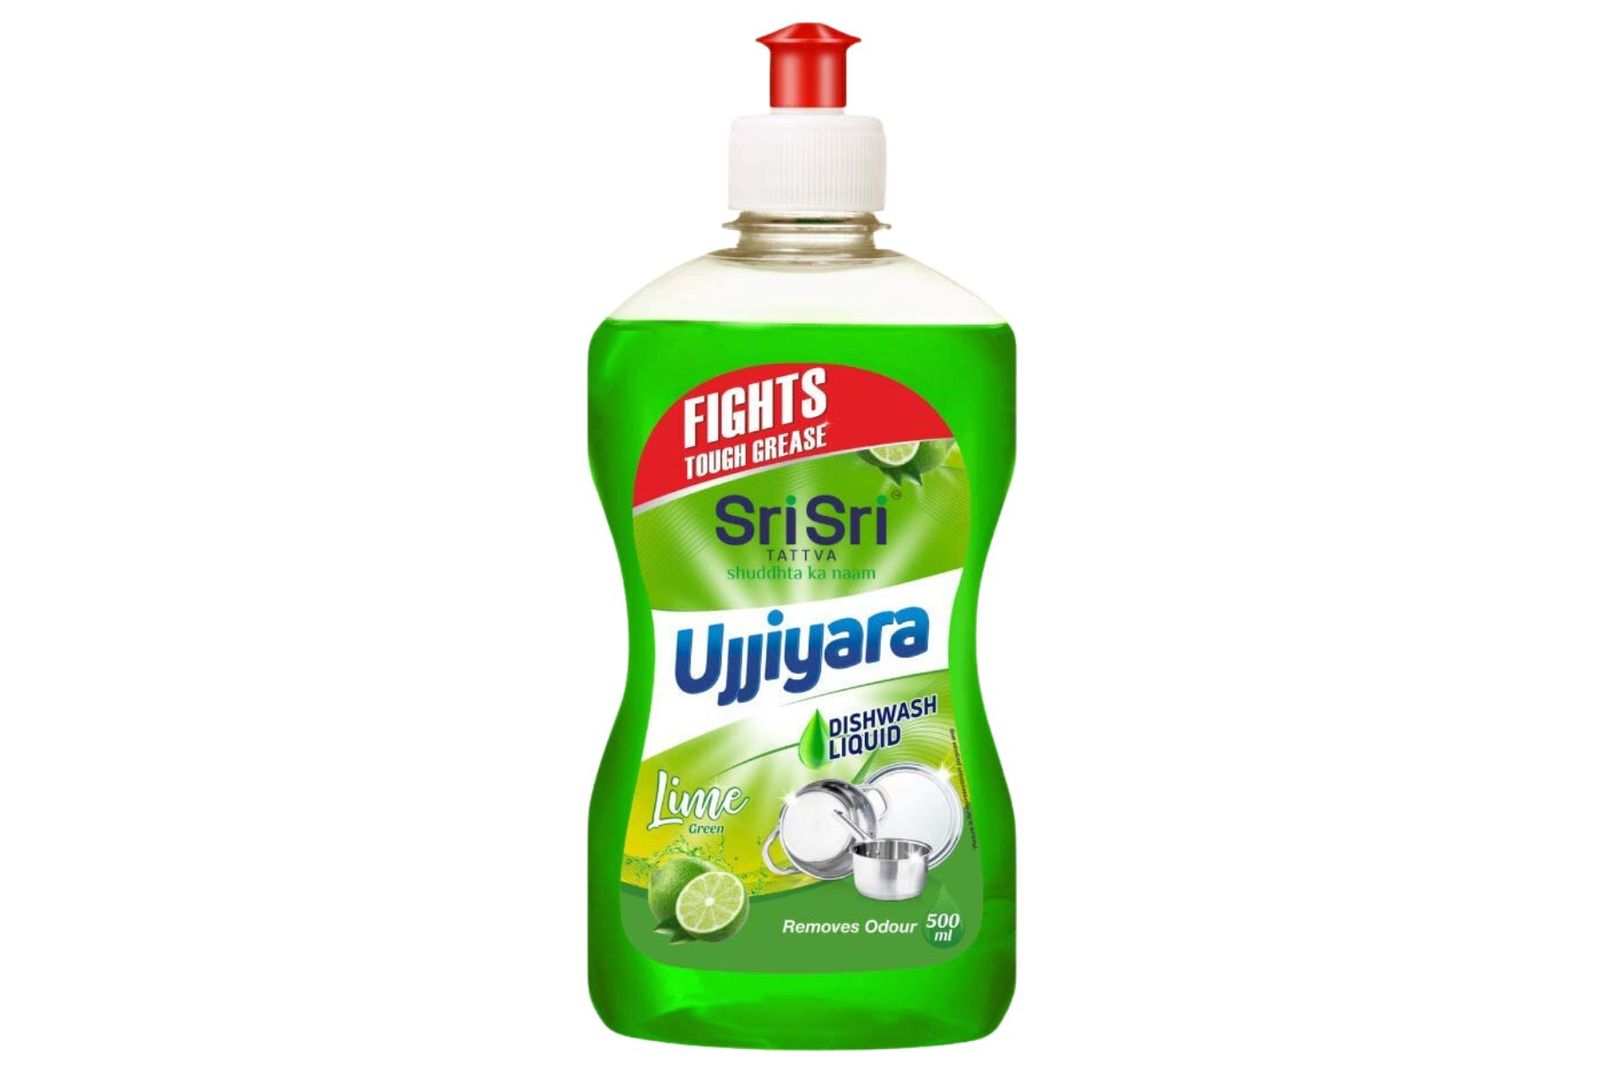 Sri Sri Tattva Ujjiyara Lime Dishwash Liquid